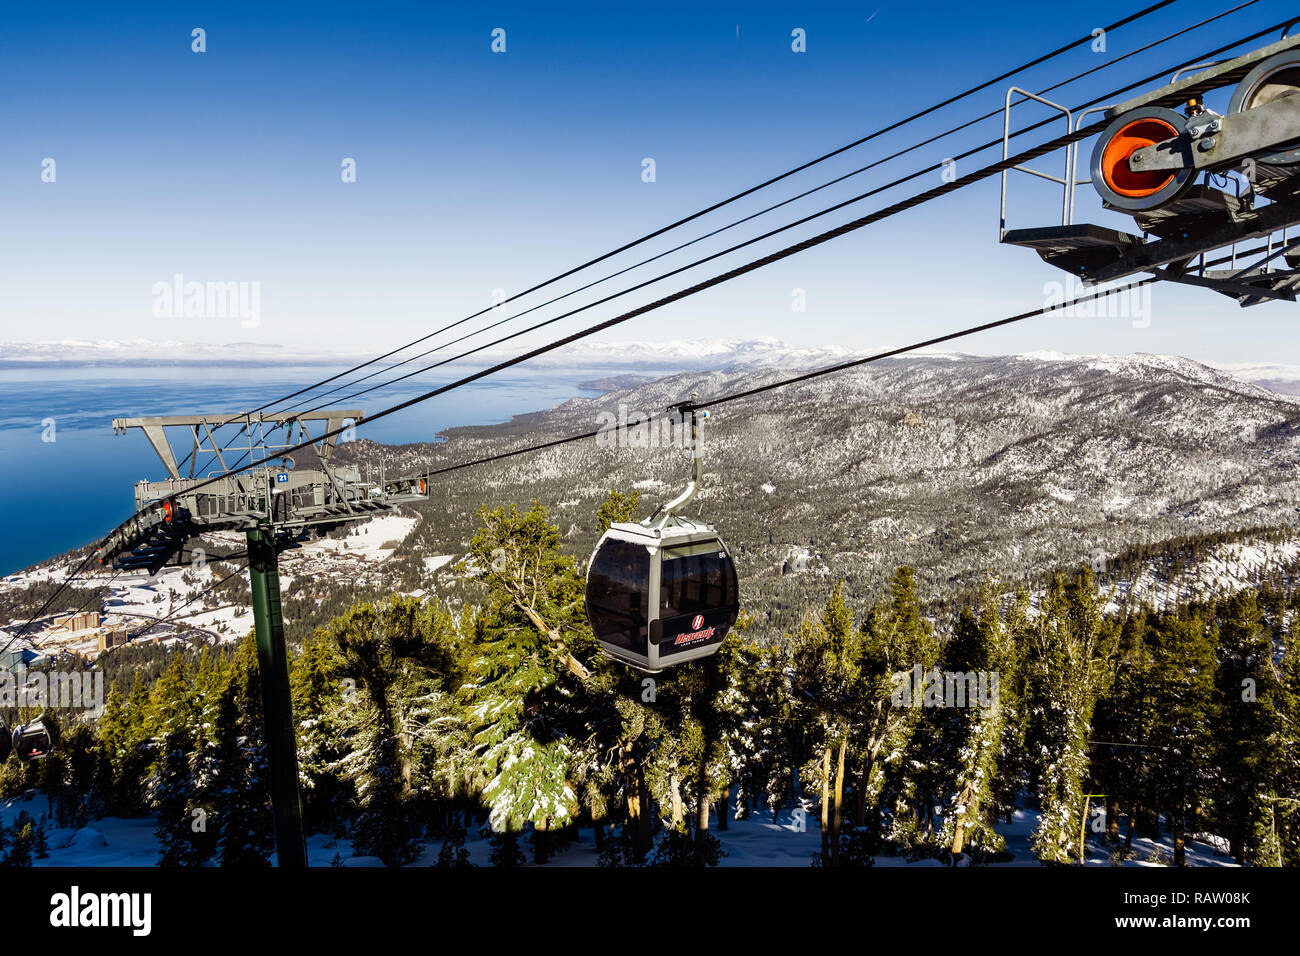 Décembre 26, 2018 South Lake Tahoe / CA / USA - Heavenly ski resort Gondoles sur une journée ensoleillée Banque D'Images